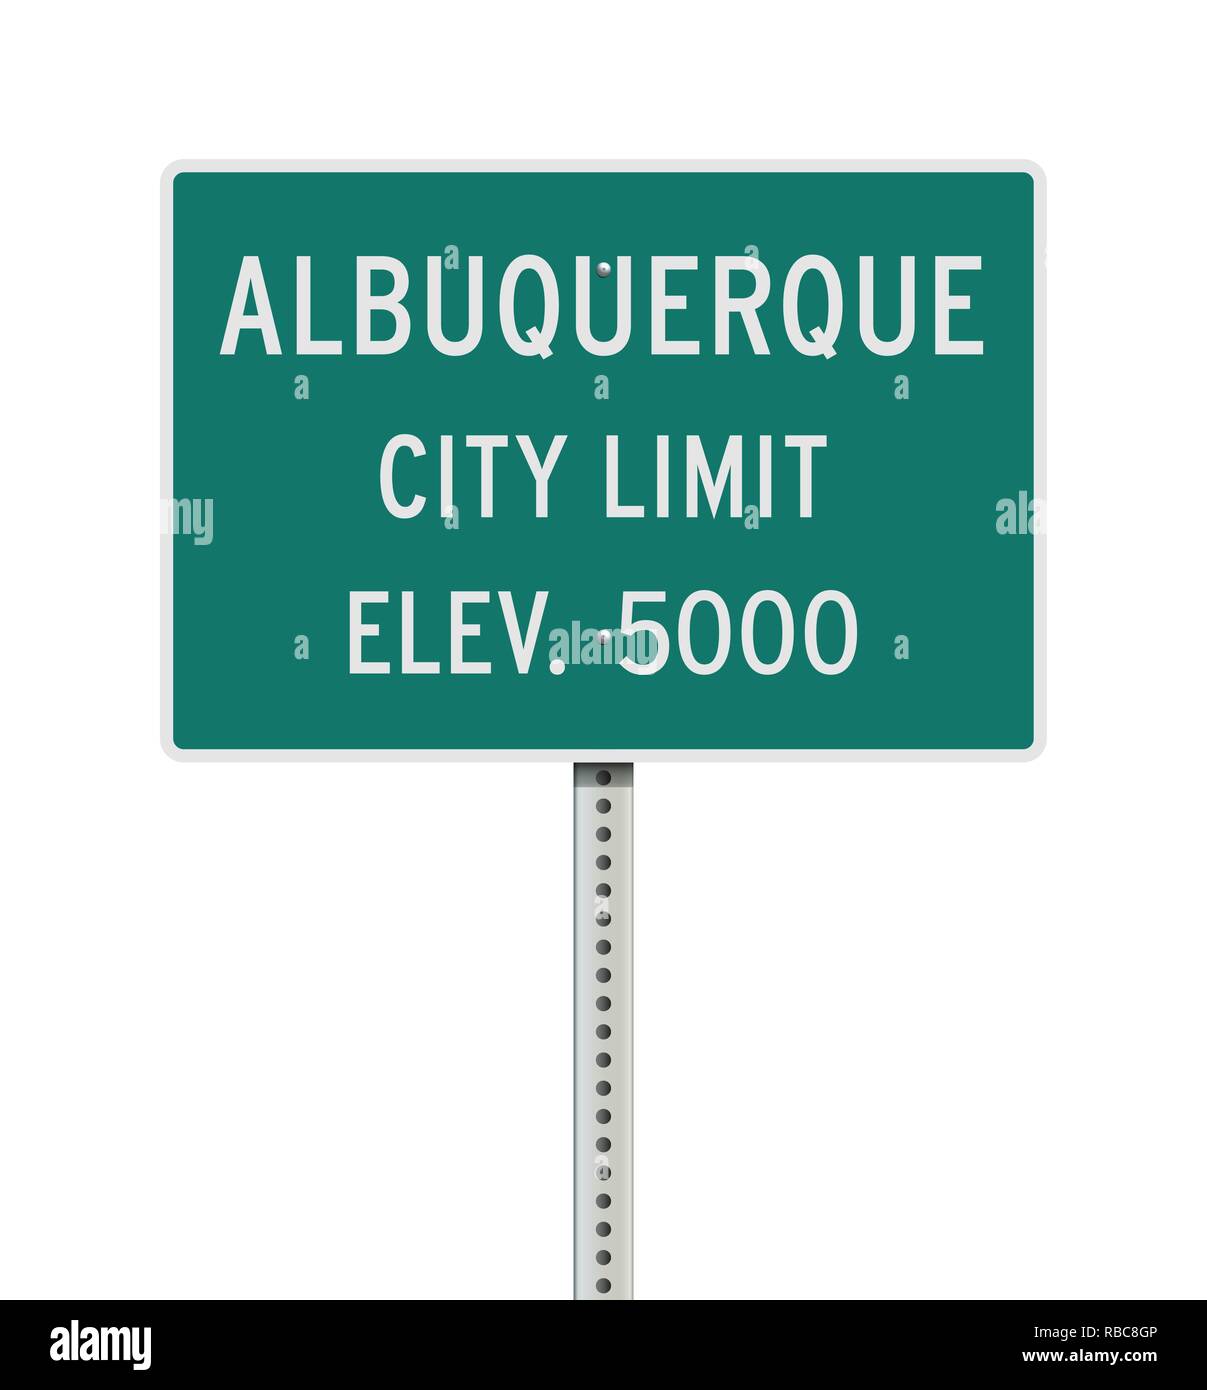 Illustrazione Vettoriale della città di Albuquerque limitare cartello verde Illustrazione Vettoriale